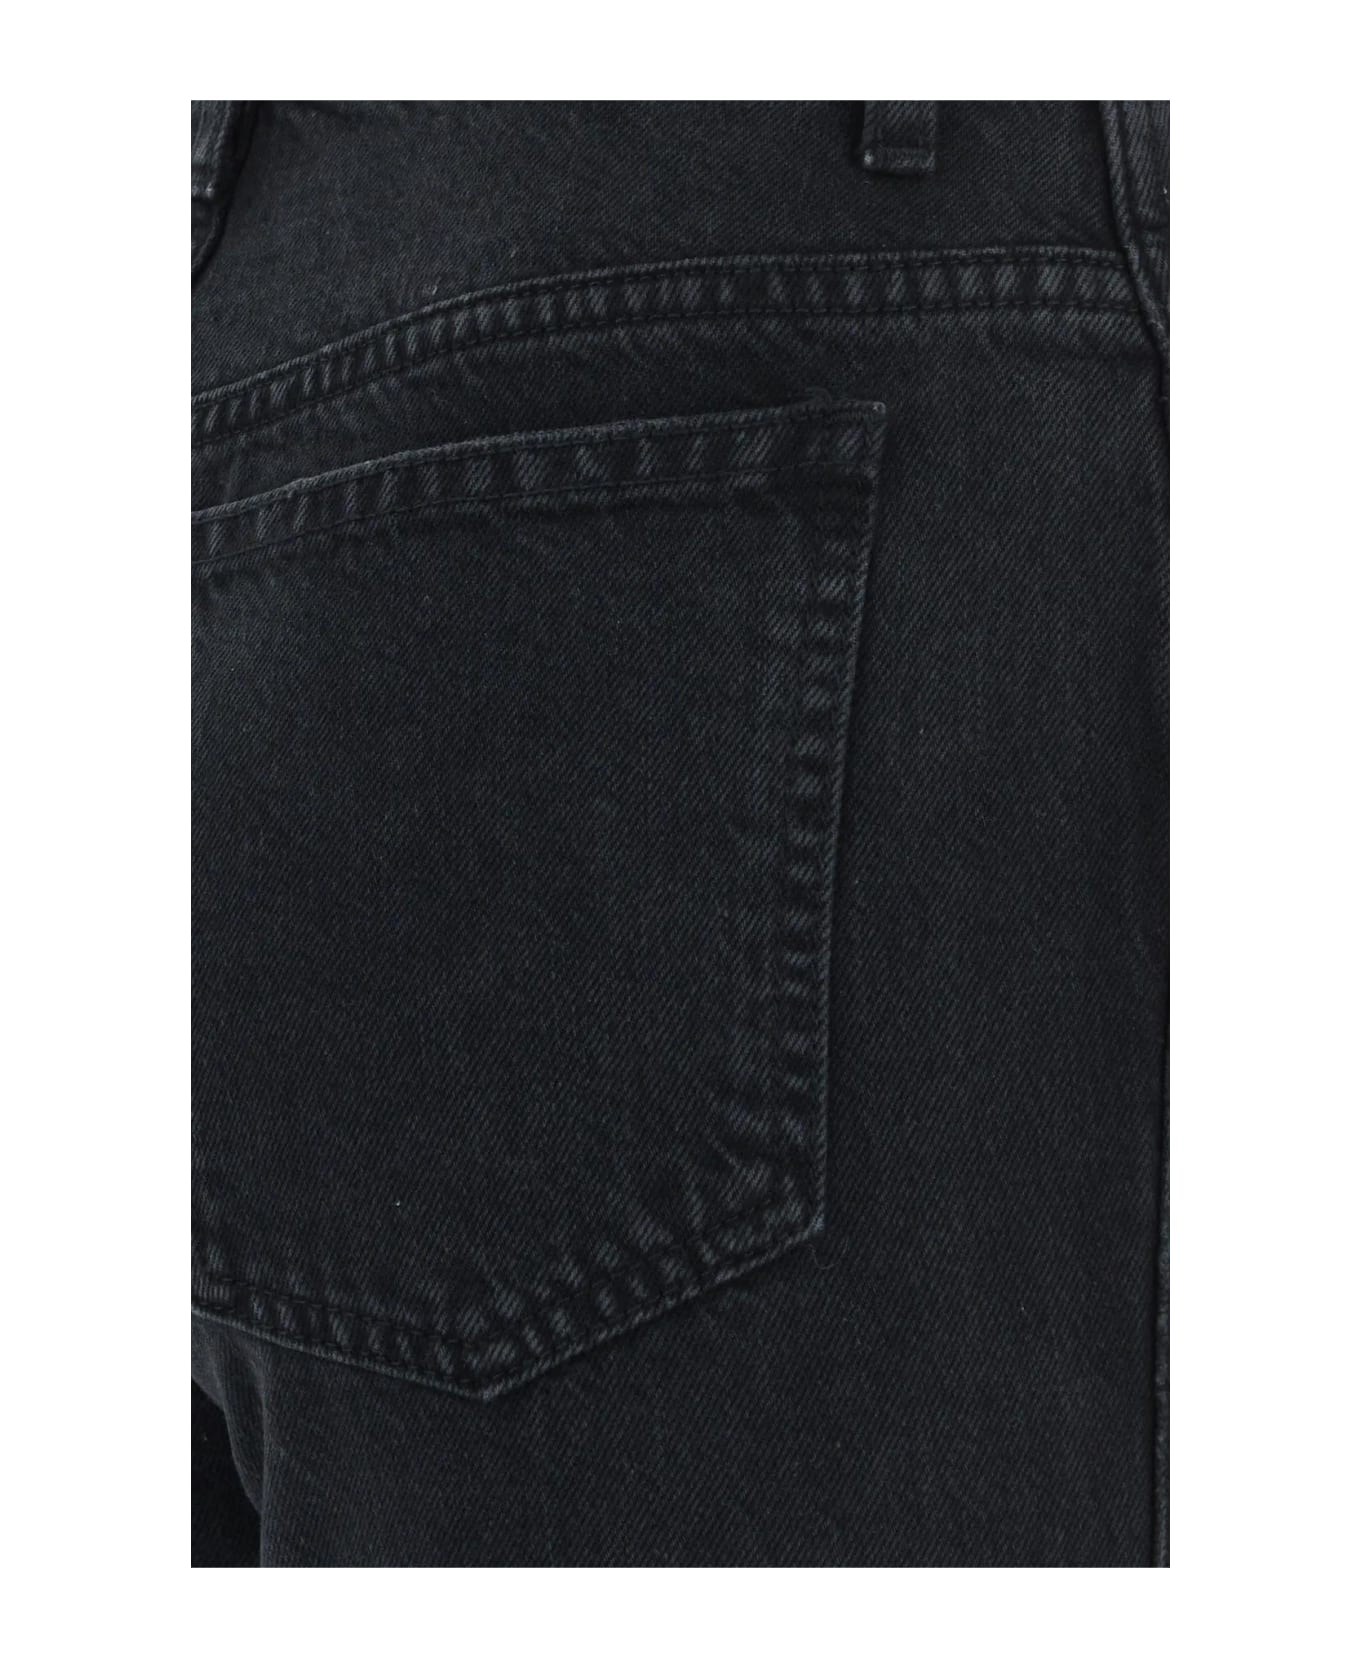 Khaite Black Denim Jeans - Prescott